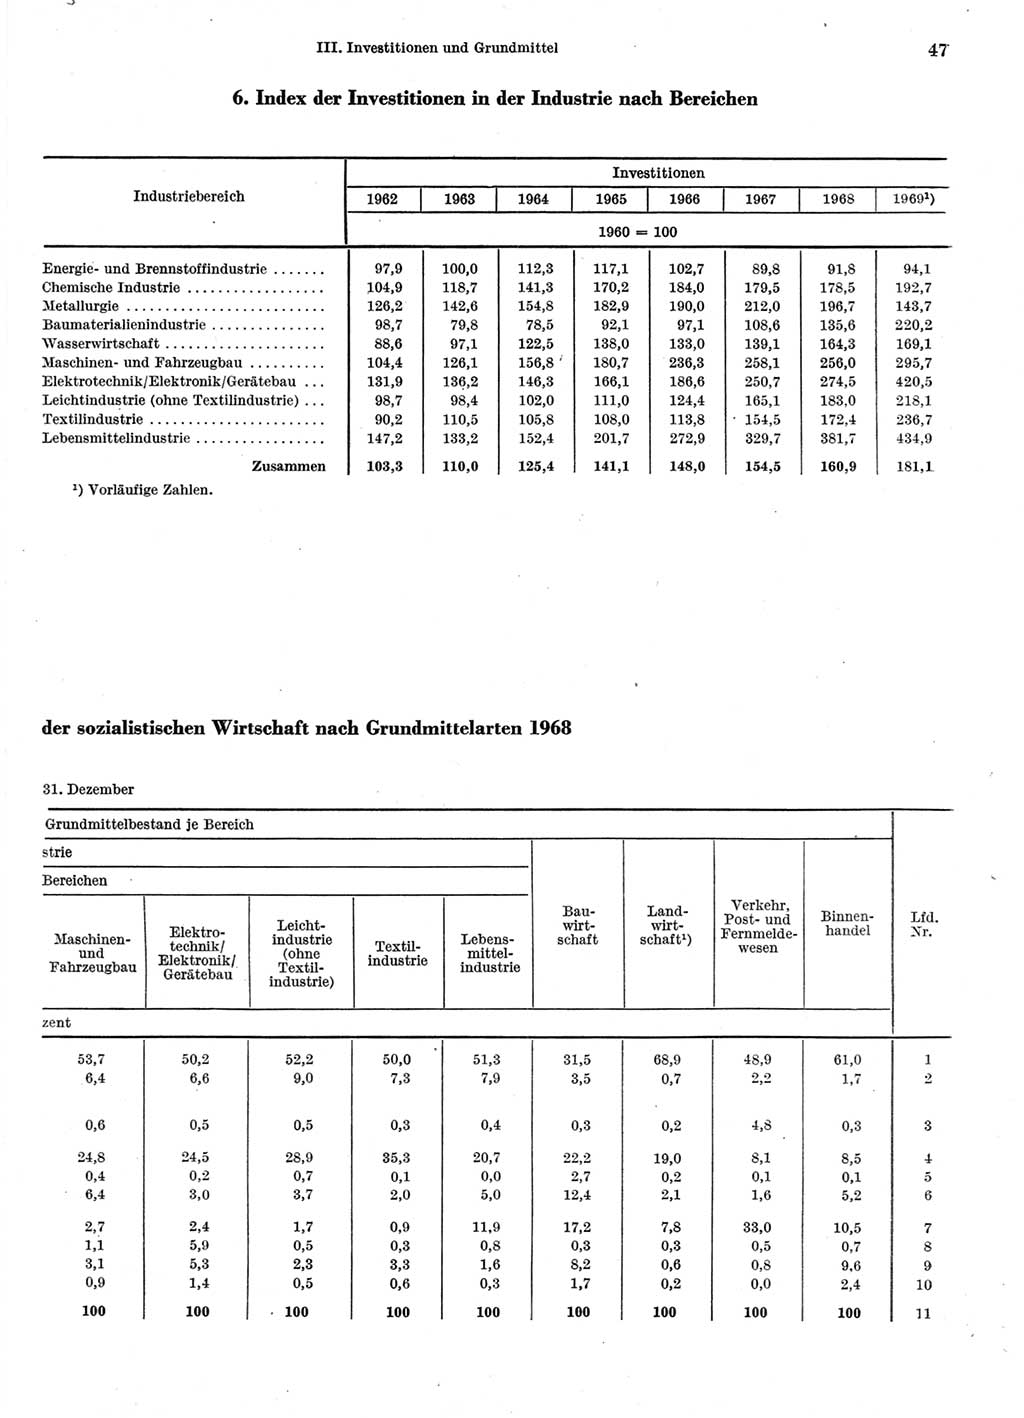 Statistisches Jahrbuch der Deutschen Demokratischen Republik (DDR) 1970, Seite 47 (Stat. Jb. DDR 1970, S. 47)